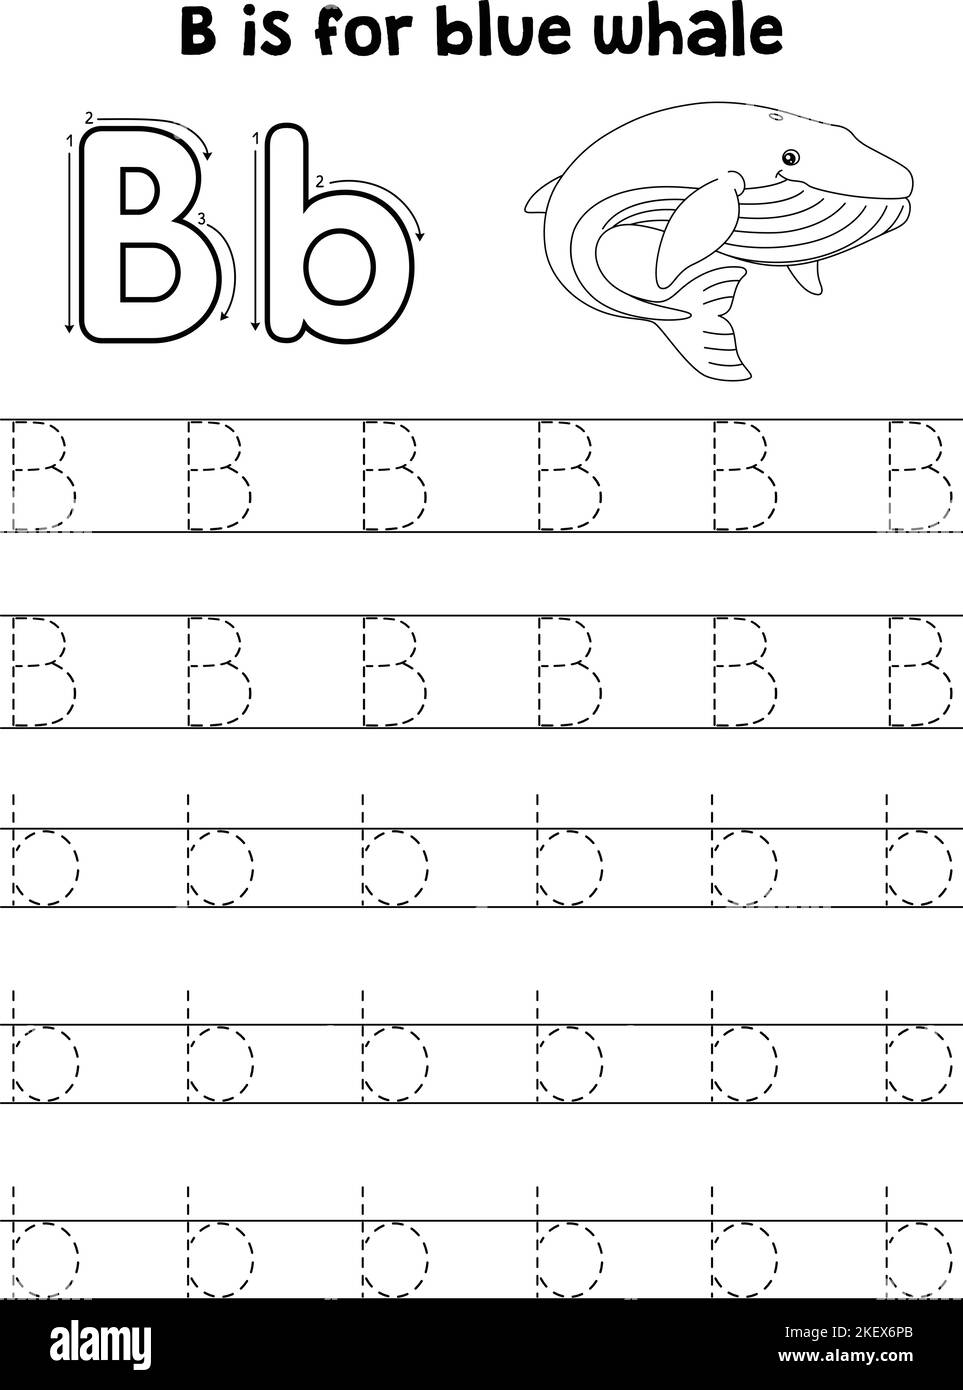 Bleu baleine animal Tracing lettre ABC coloriage B Illustration de Vecteur